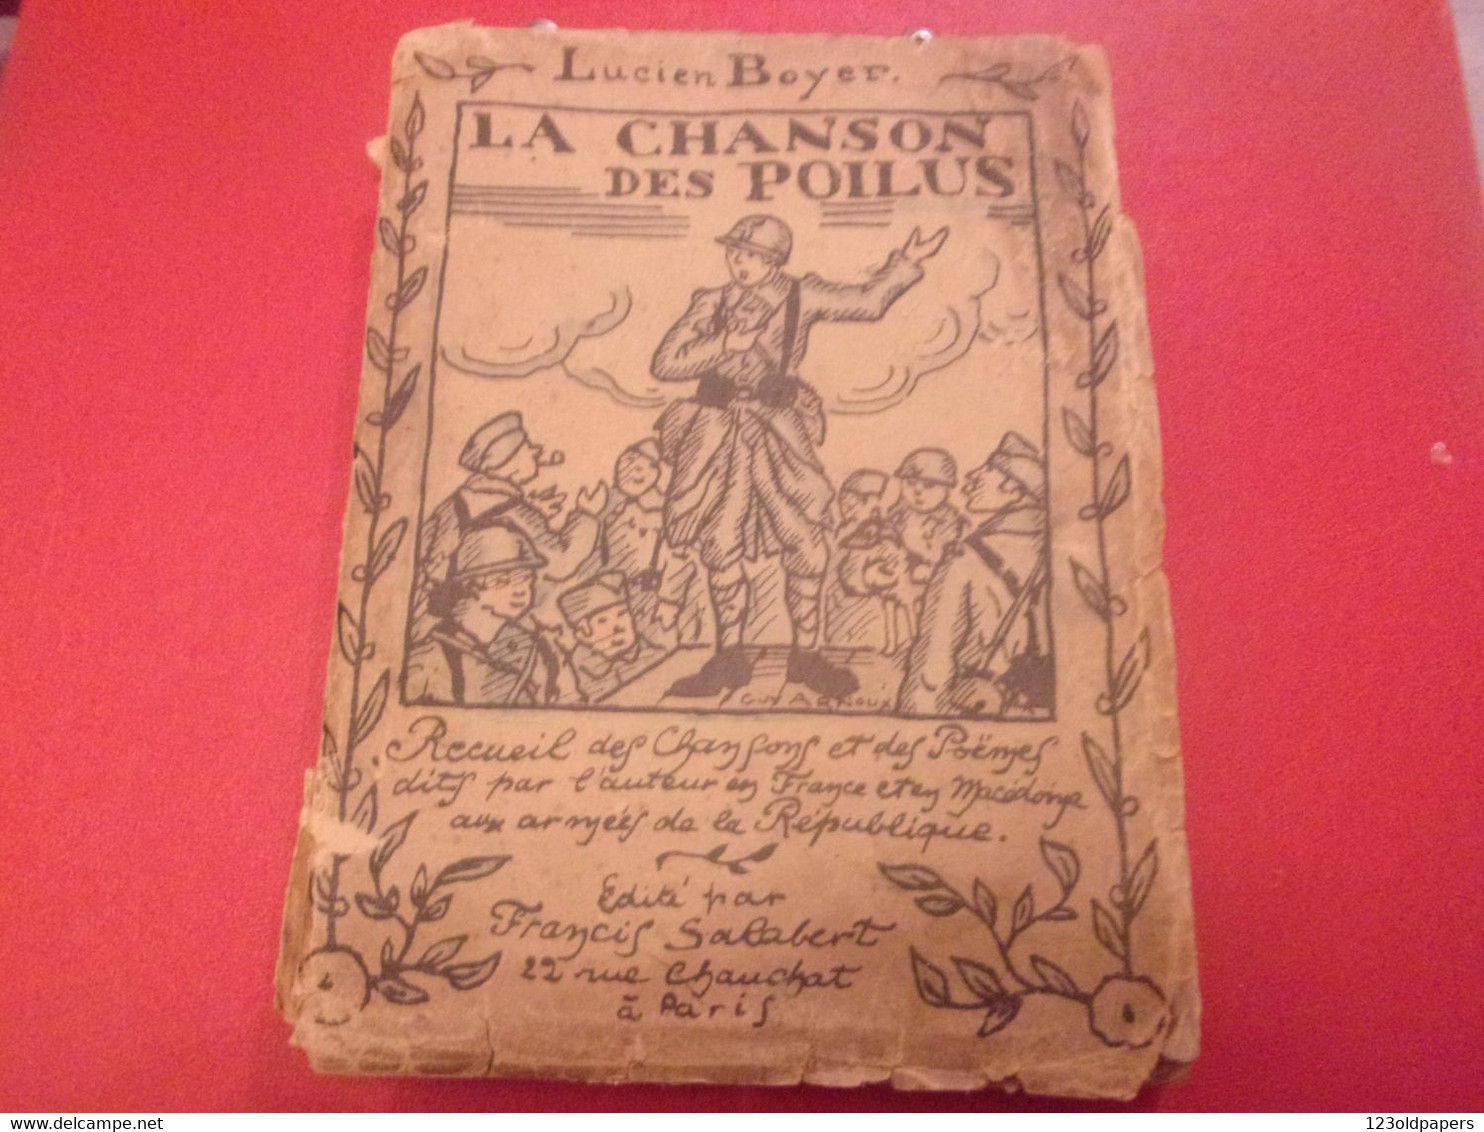 ♥️ La Chanson Des Poilus Lucien Boyer ENVOI DE L AUTEUR  SALABERT 1918 ILLUSTRE ARNOUX  / DE VALERIO WWI - 1914-18